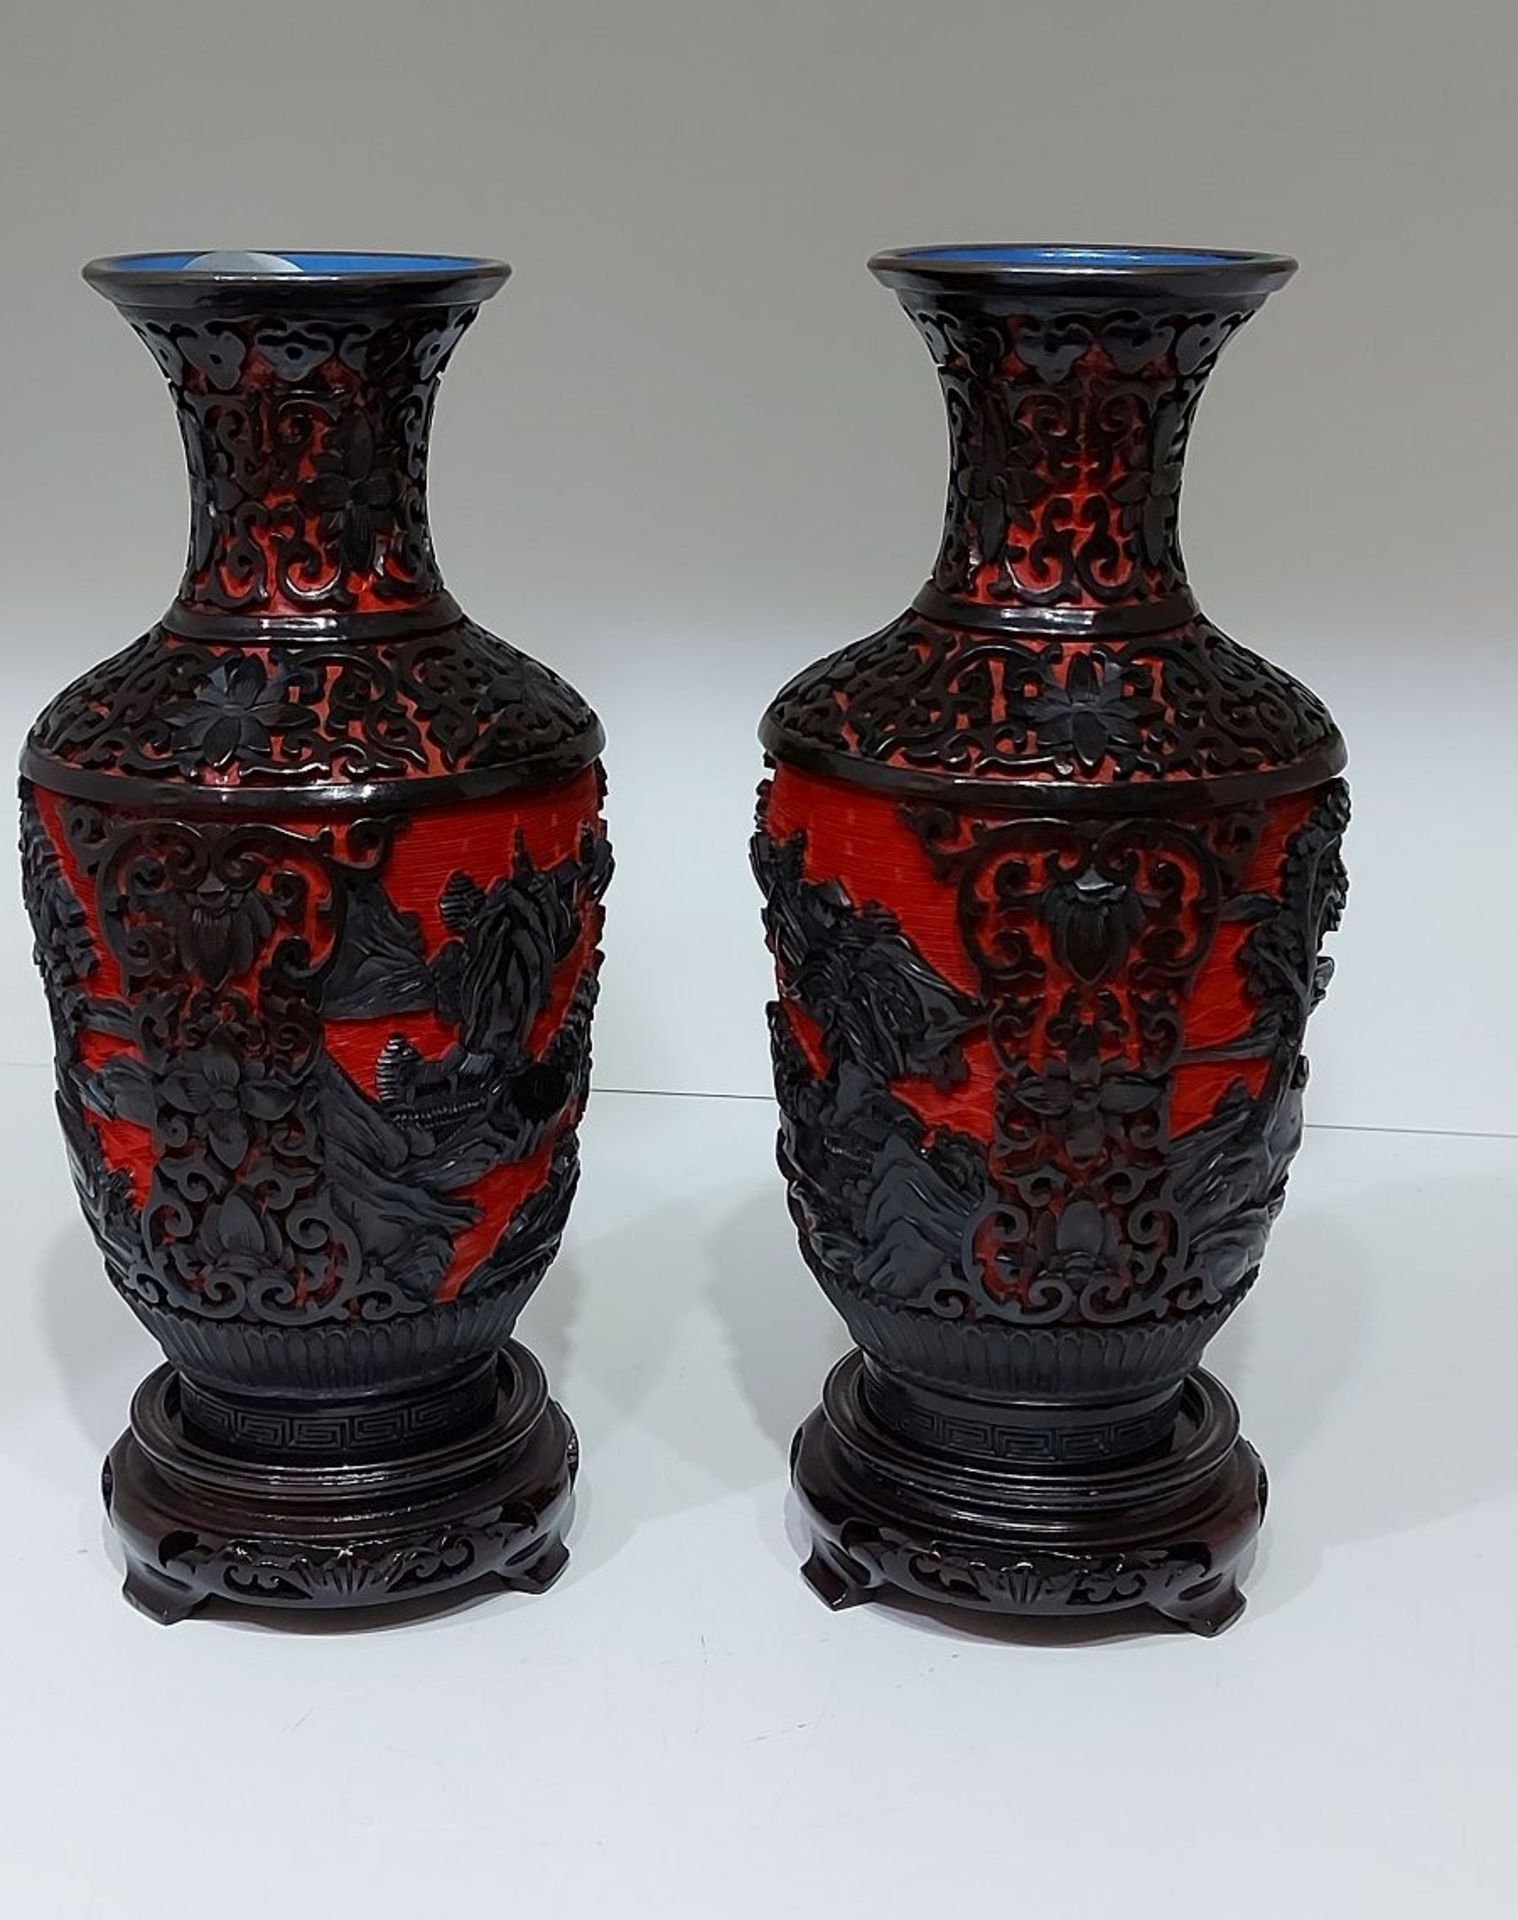 Aus Kapitänsnachlass: Paar antike Vasen zweifarbig Schwarz / Rot - Bild 3 aus 5